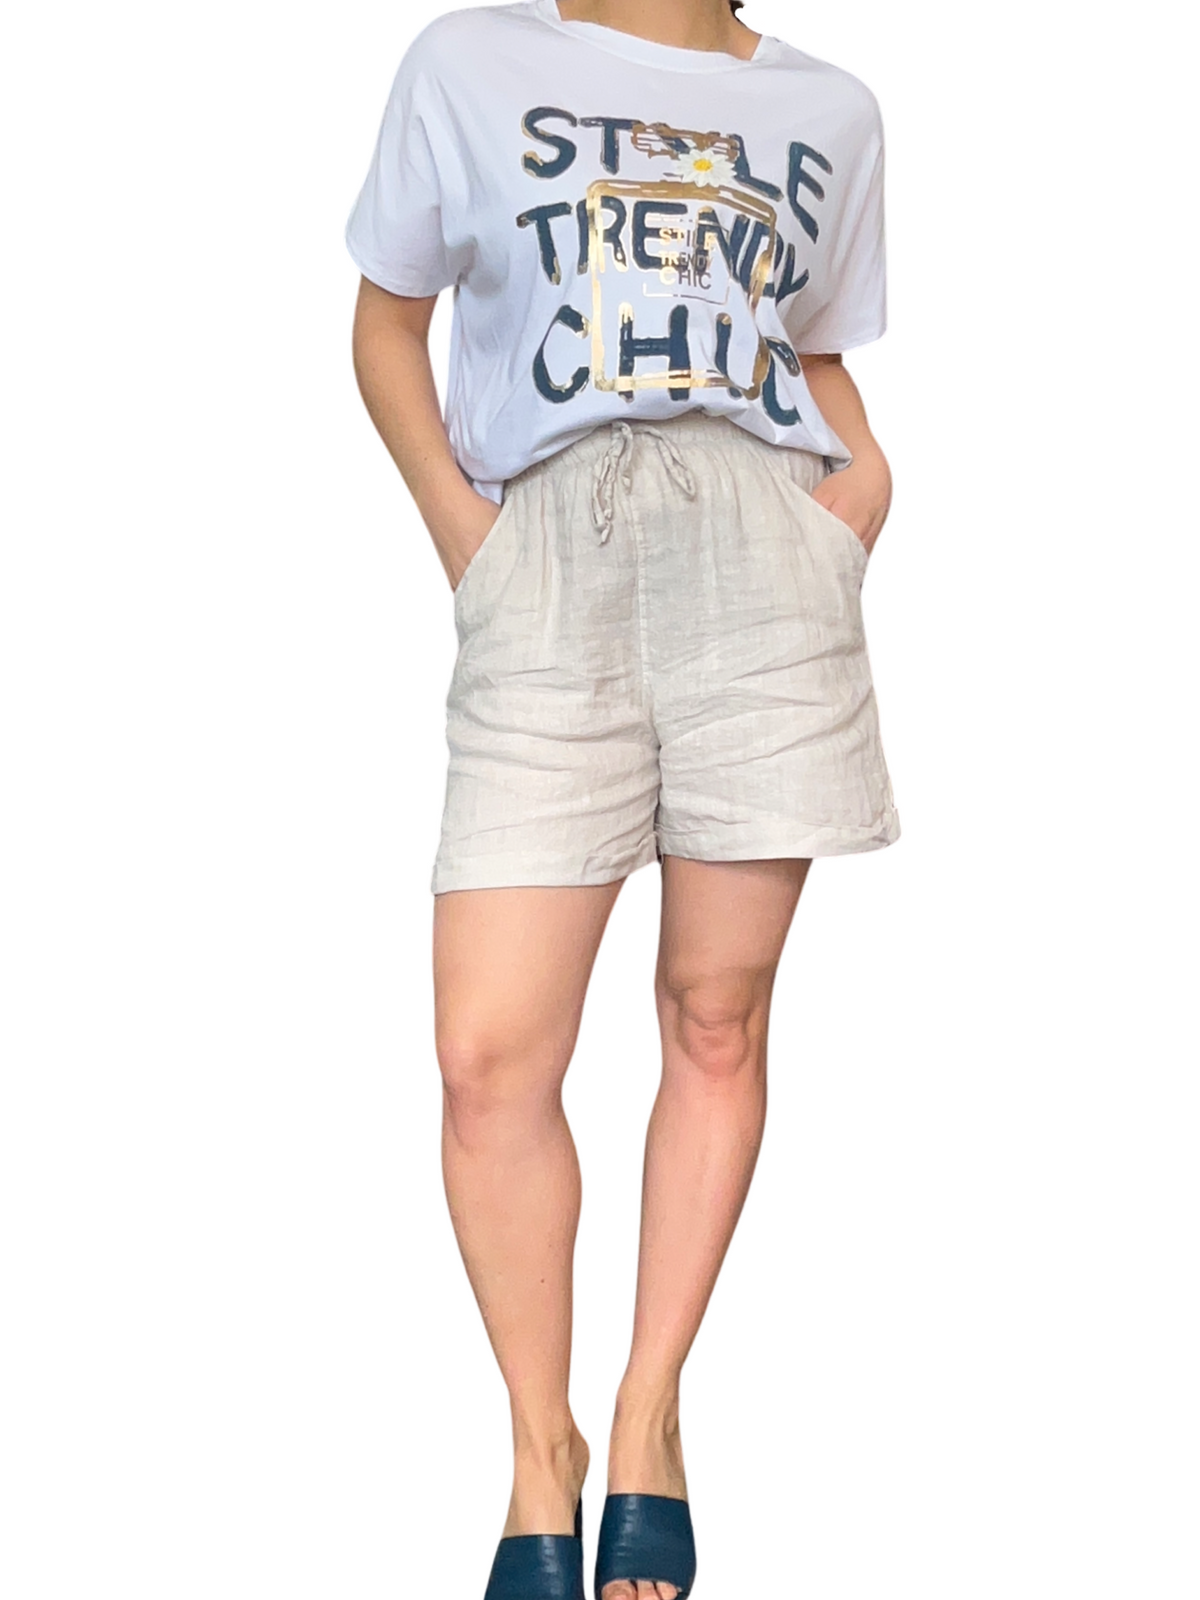 T-shirt blanc pour femme avec imprimé « Style Trendy Chic » avec short en lin et sandales à talon.